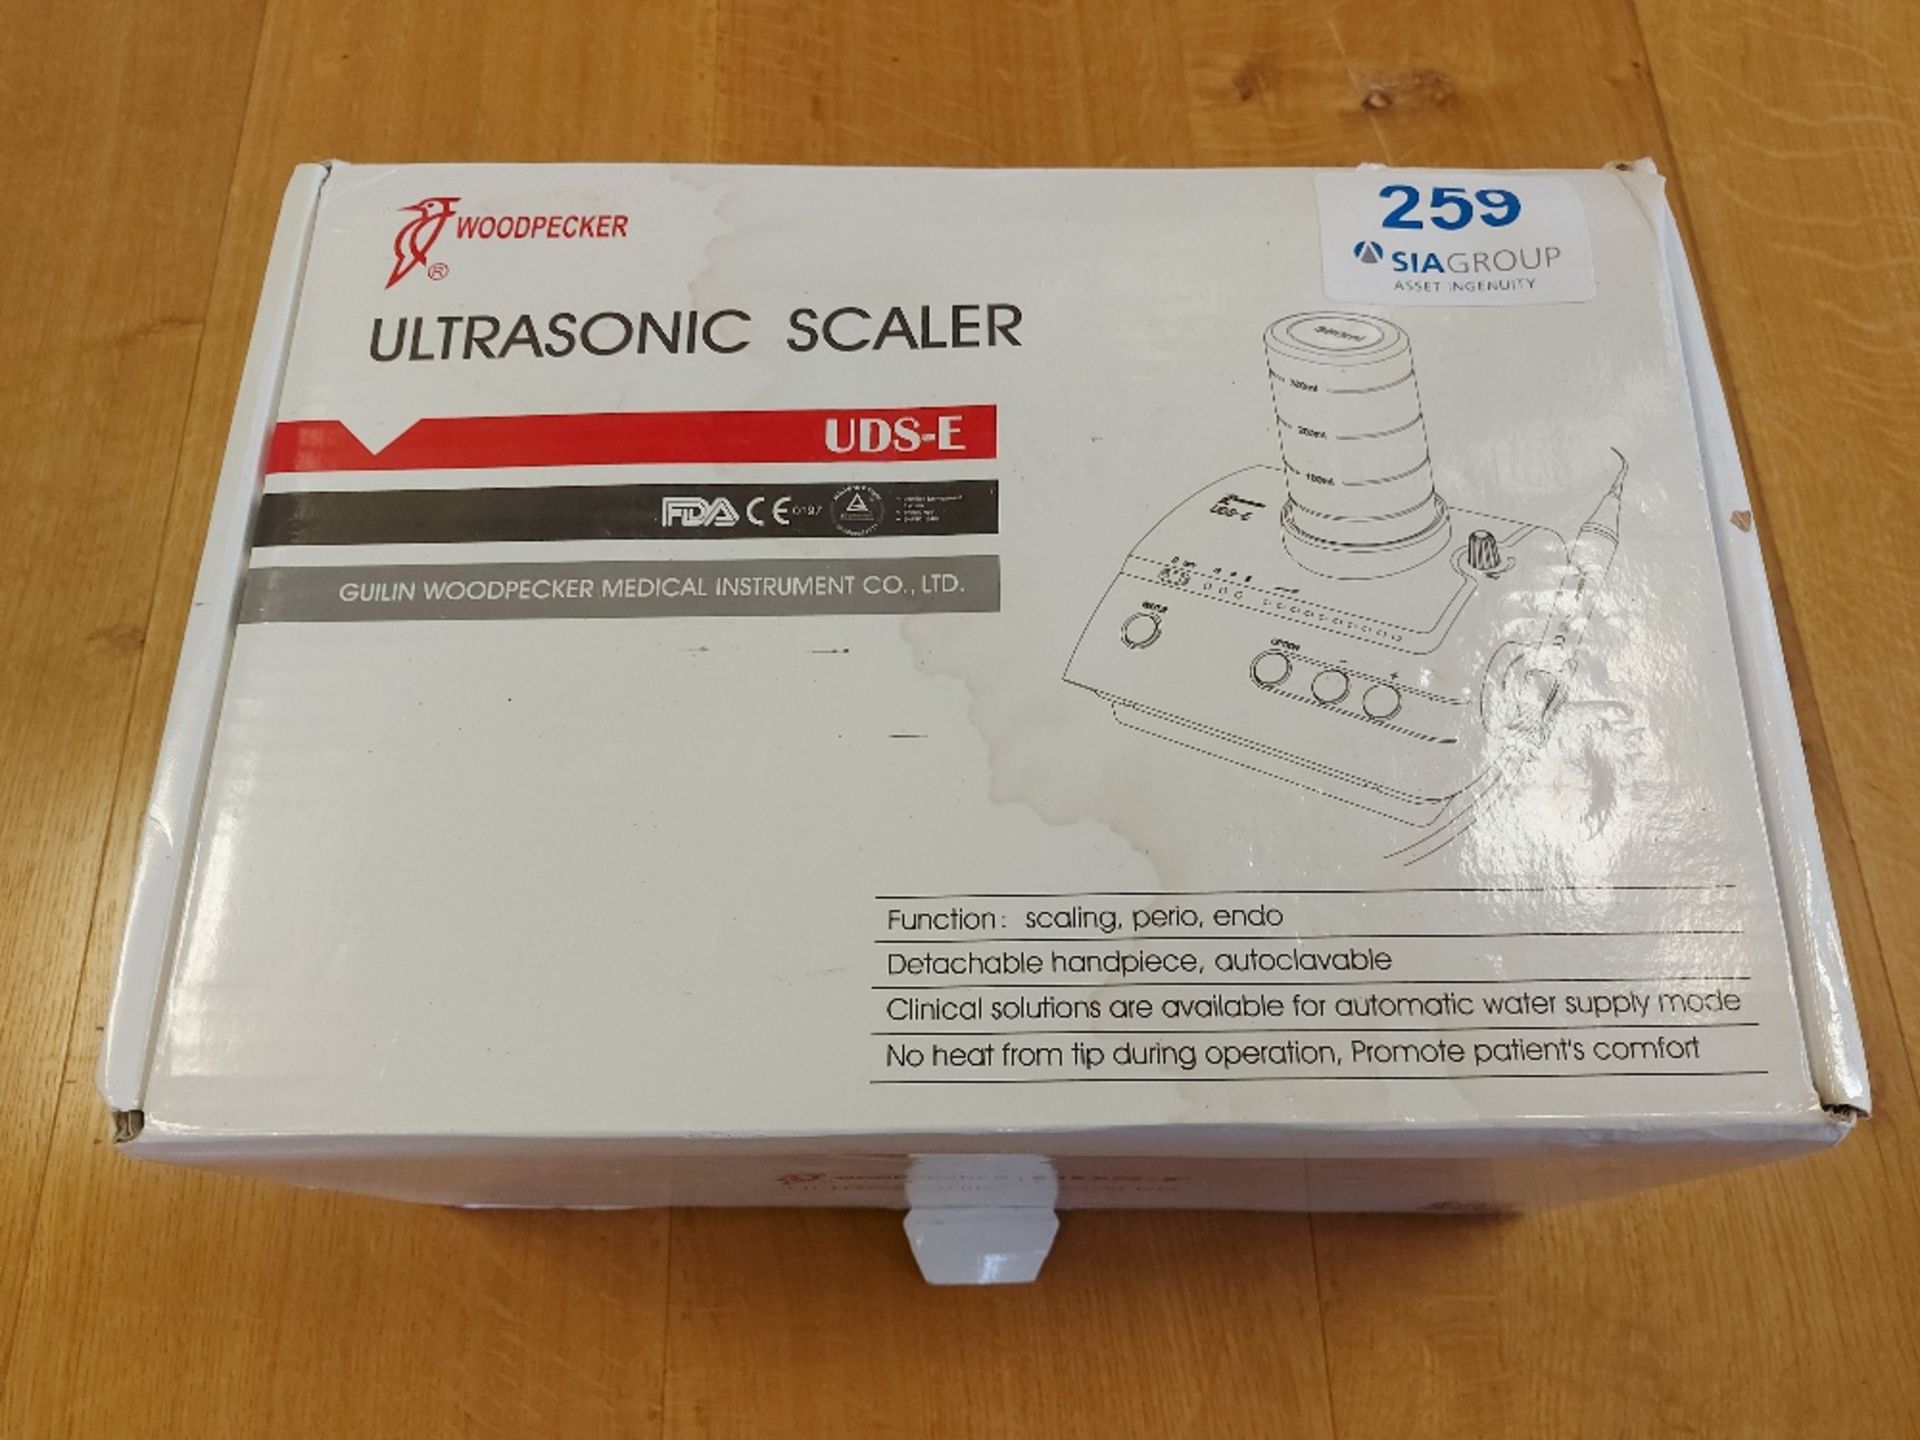 WoodPecker UDS-E Ultrasonic Scaler